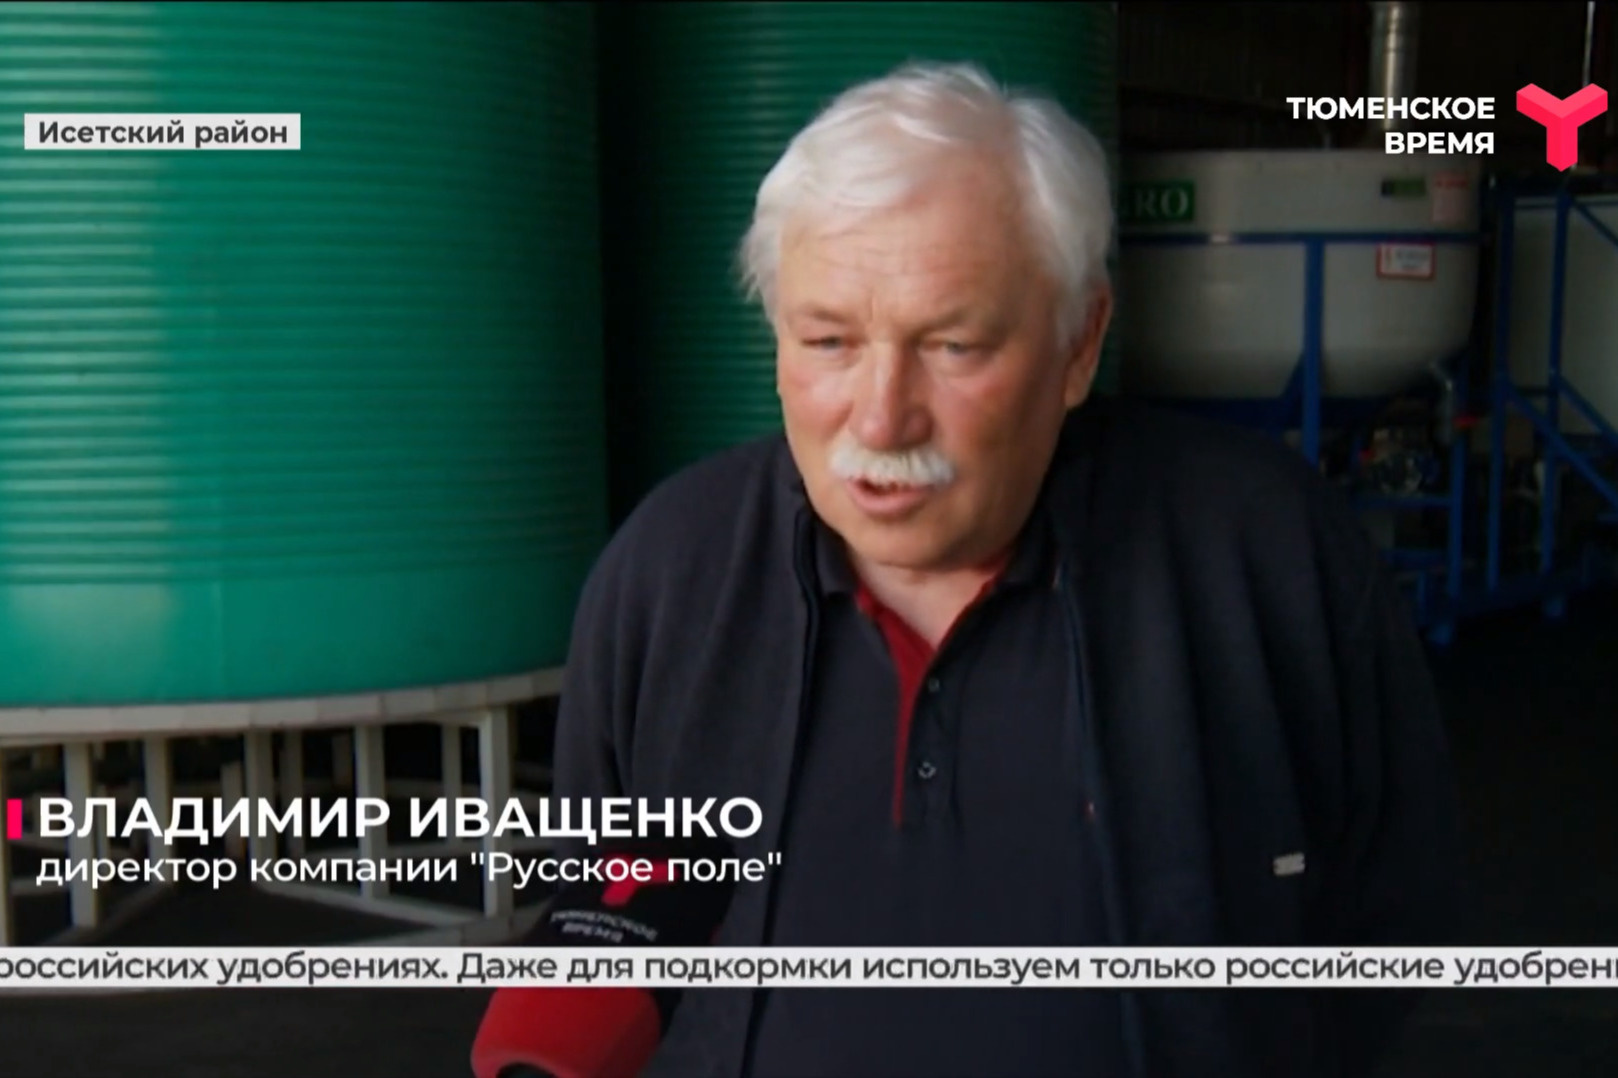 Владимиру Иващенко 62 года. Он является учредителем и руководителем сельскохозяйственного предприятия в Исетском